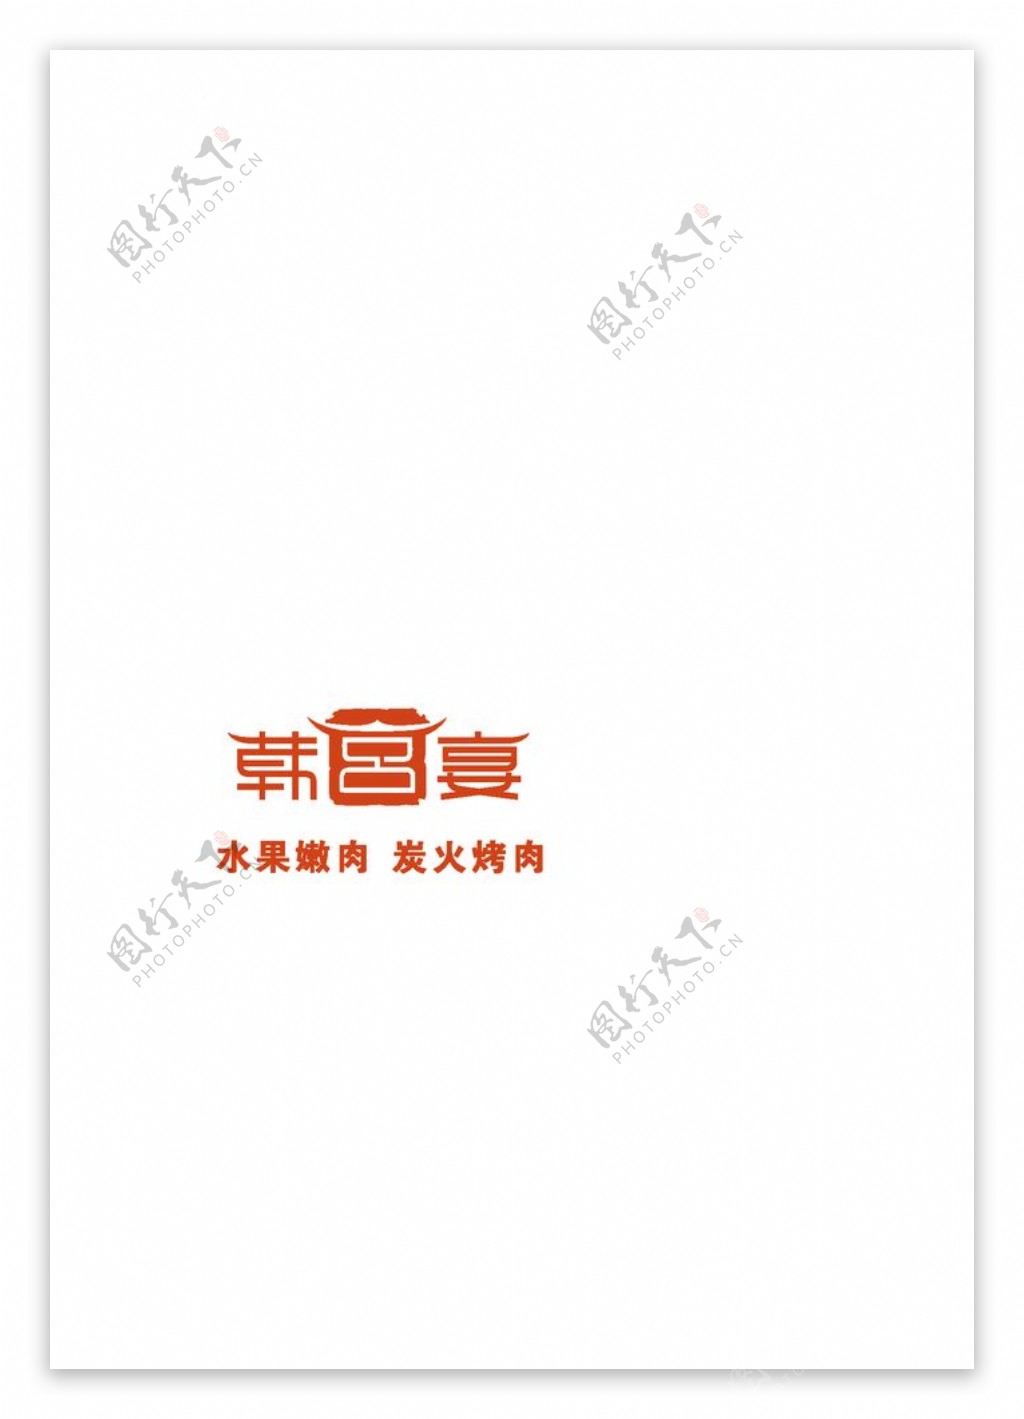 韩宫宴logo图片